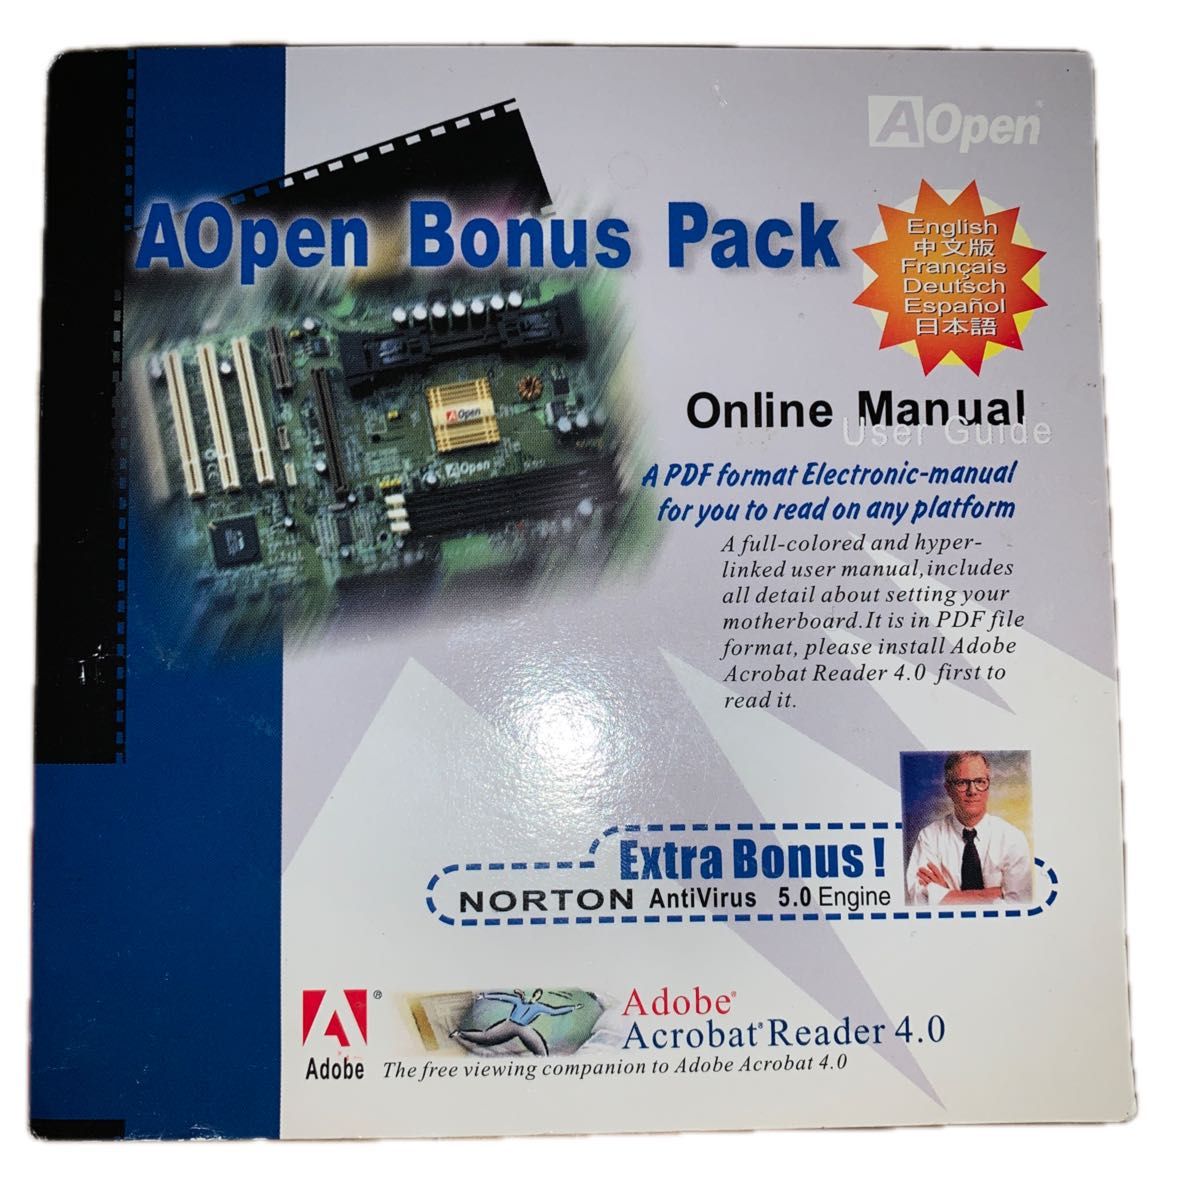 AOpen Bonus Pack CD-ROM